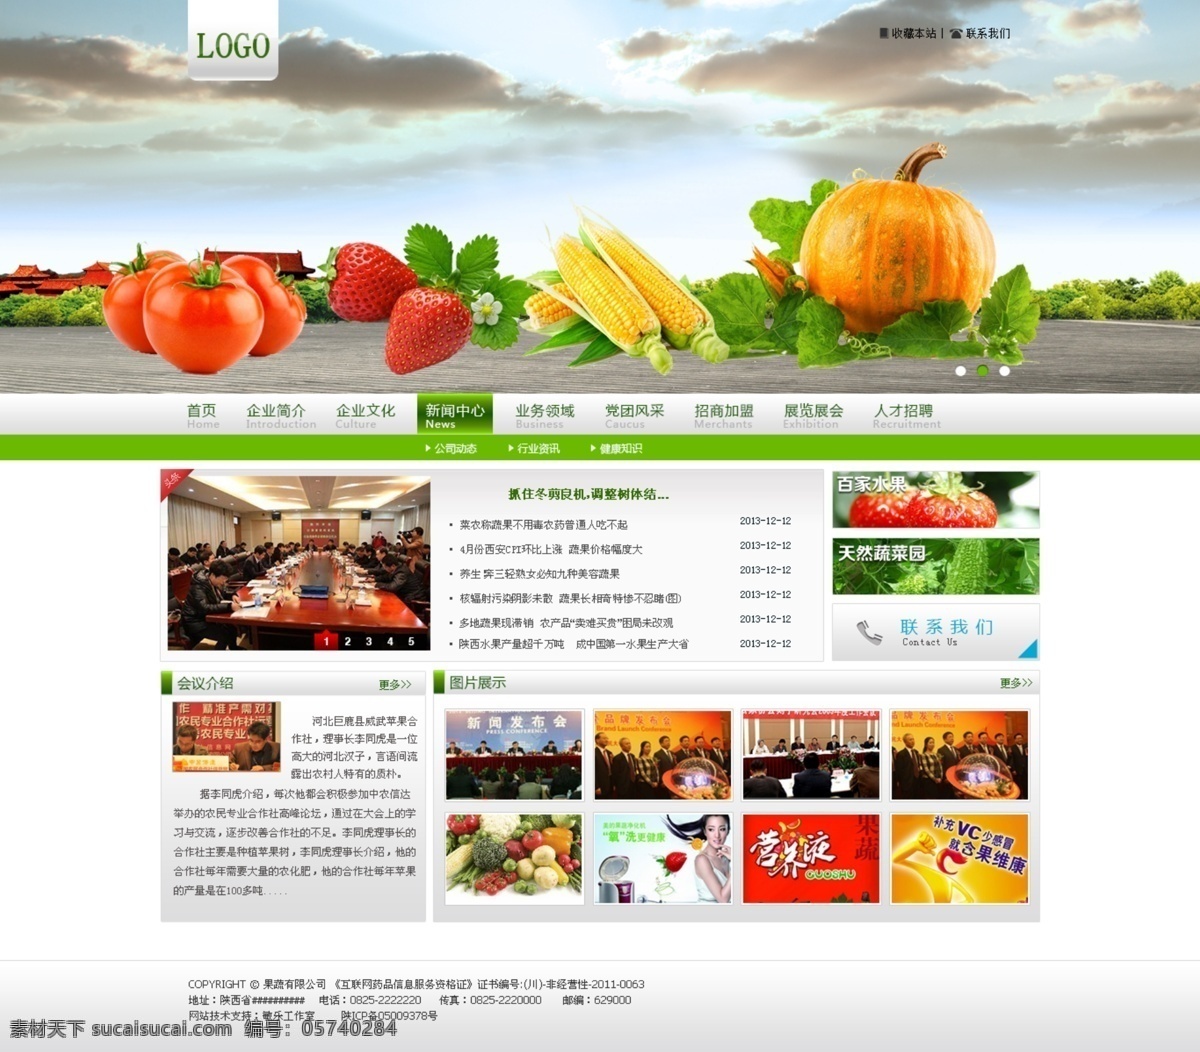 果蔬 会议 网 psd源文件 网页模板 源文件 中文模板 模板下载 果蔬会议网 会议网 网页素材